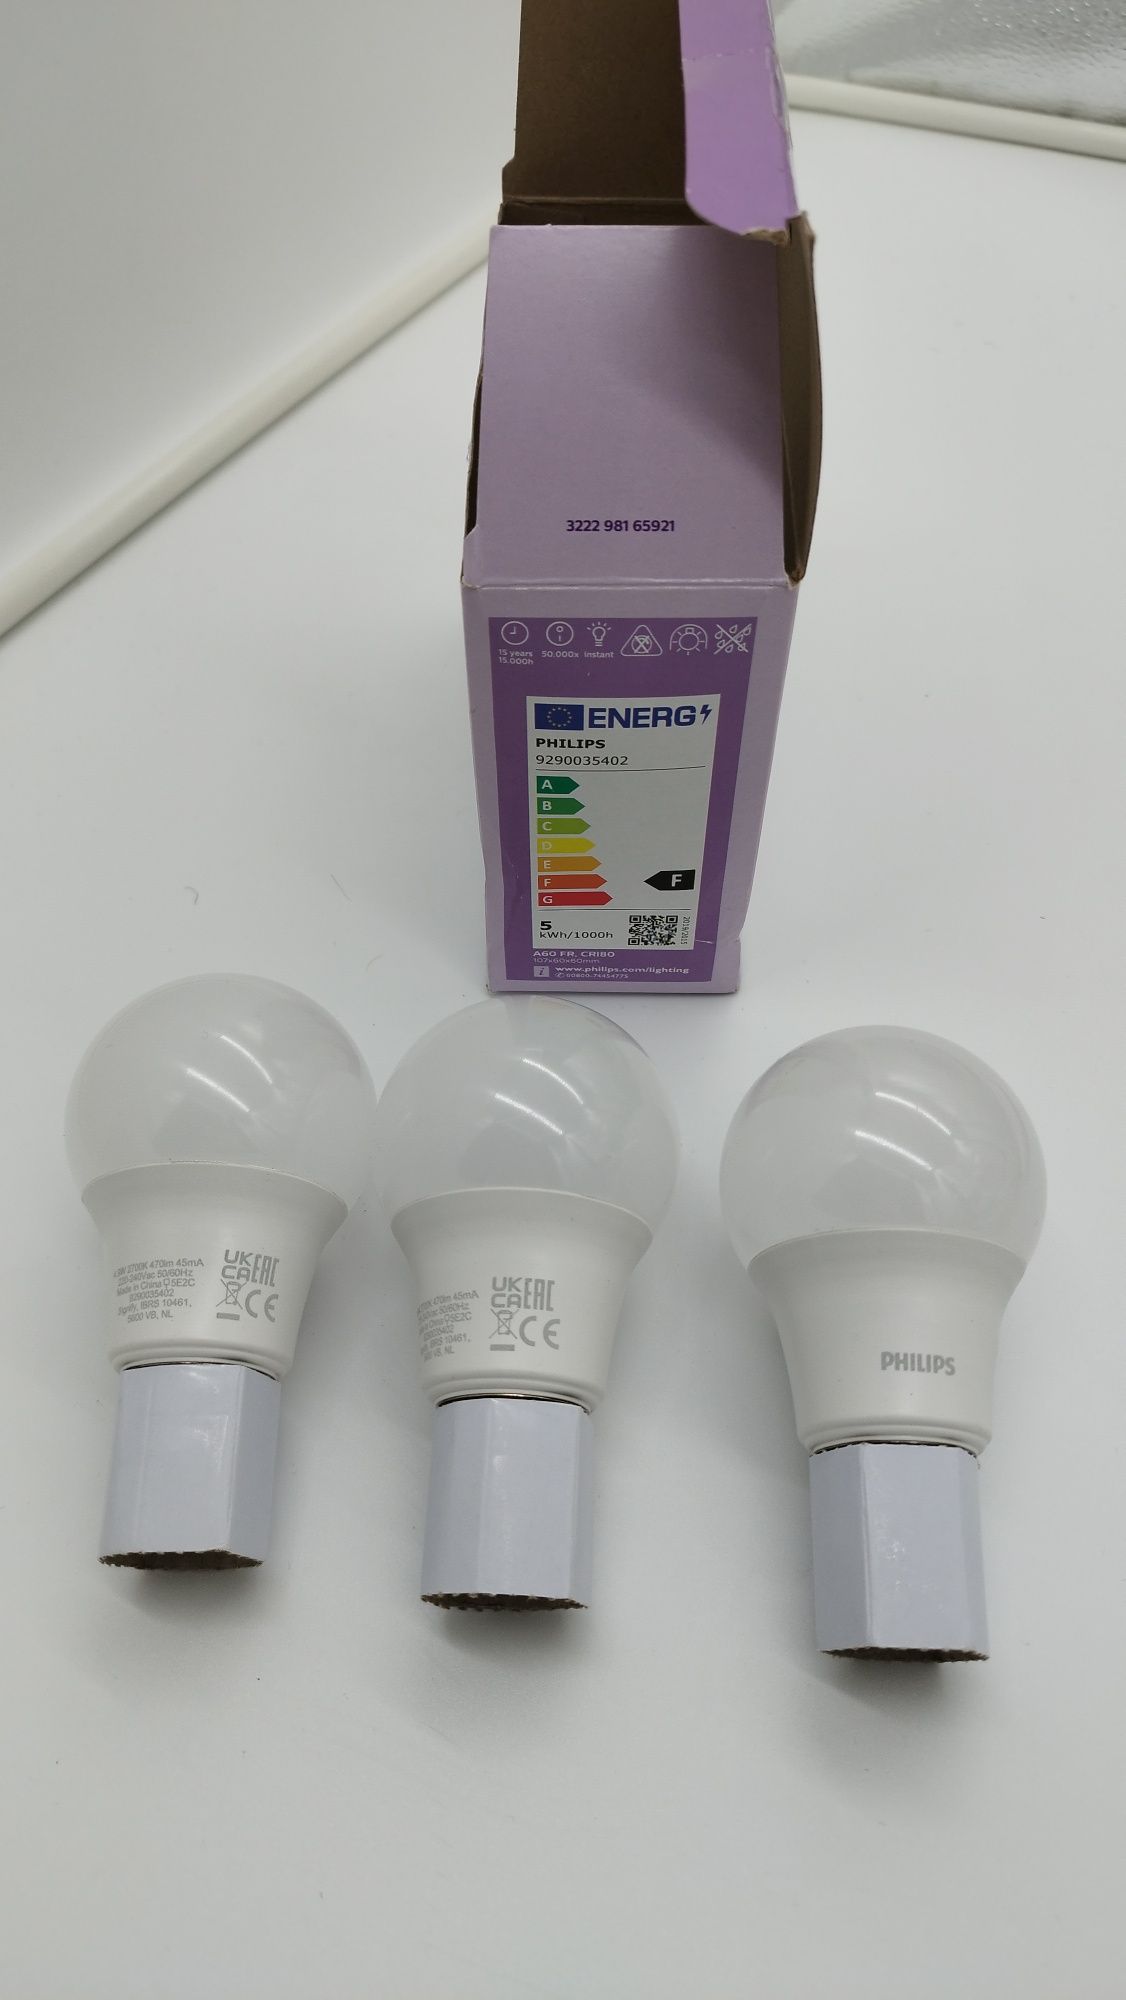 Philips Żarówka światła LED Standard 4.9W/827 (40W) Frosted 3-pack E